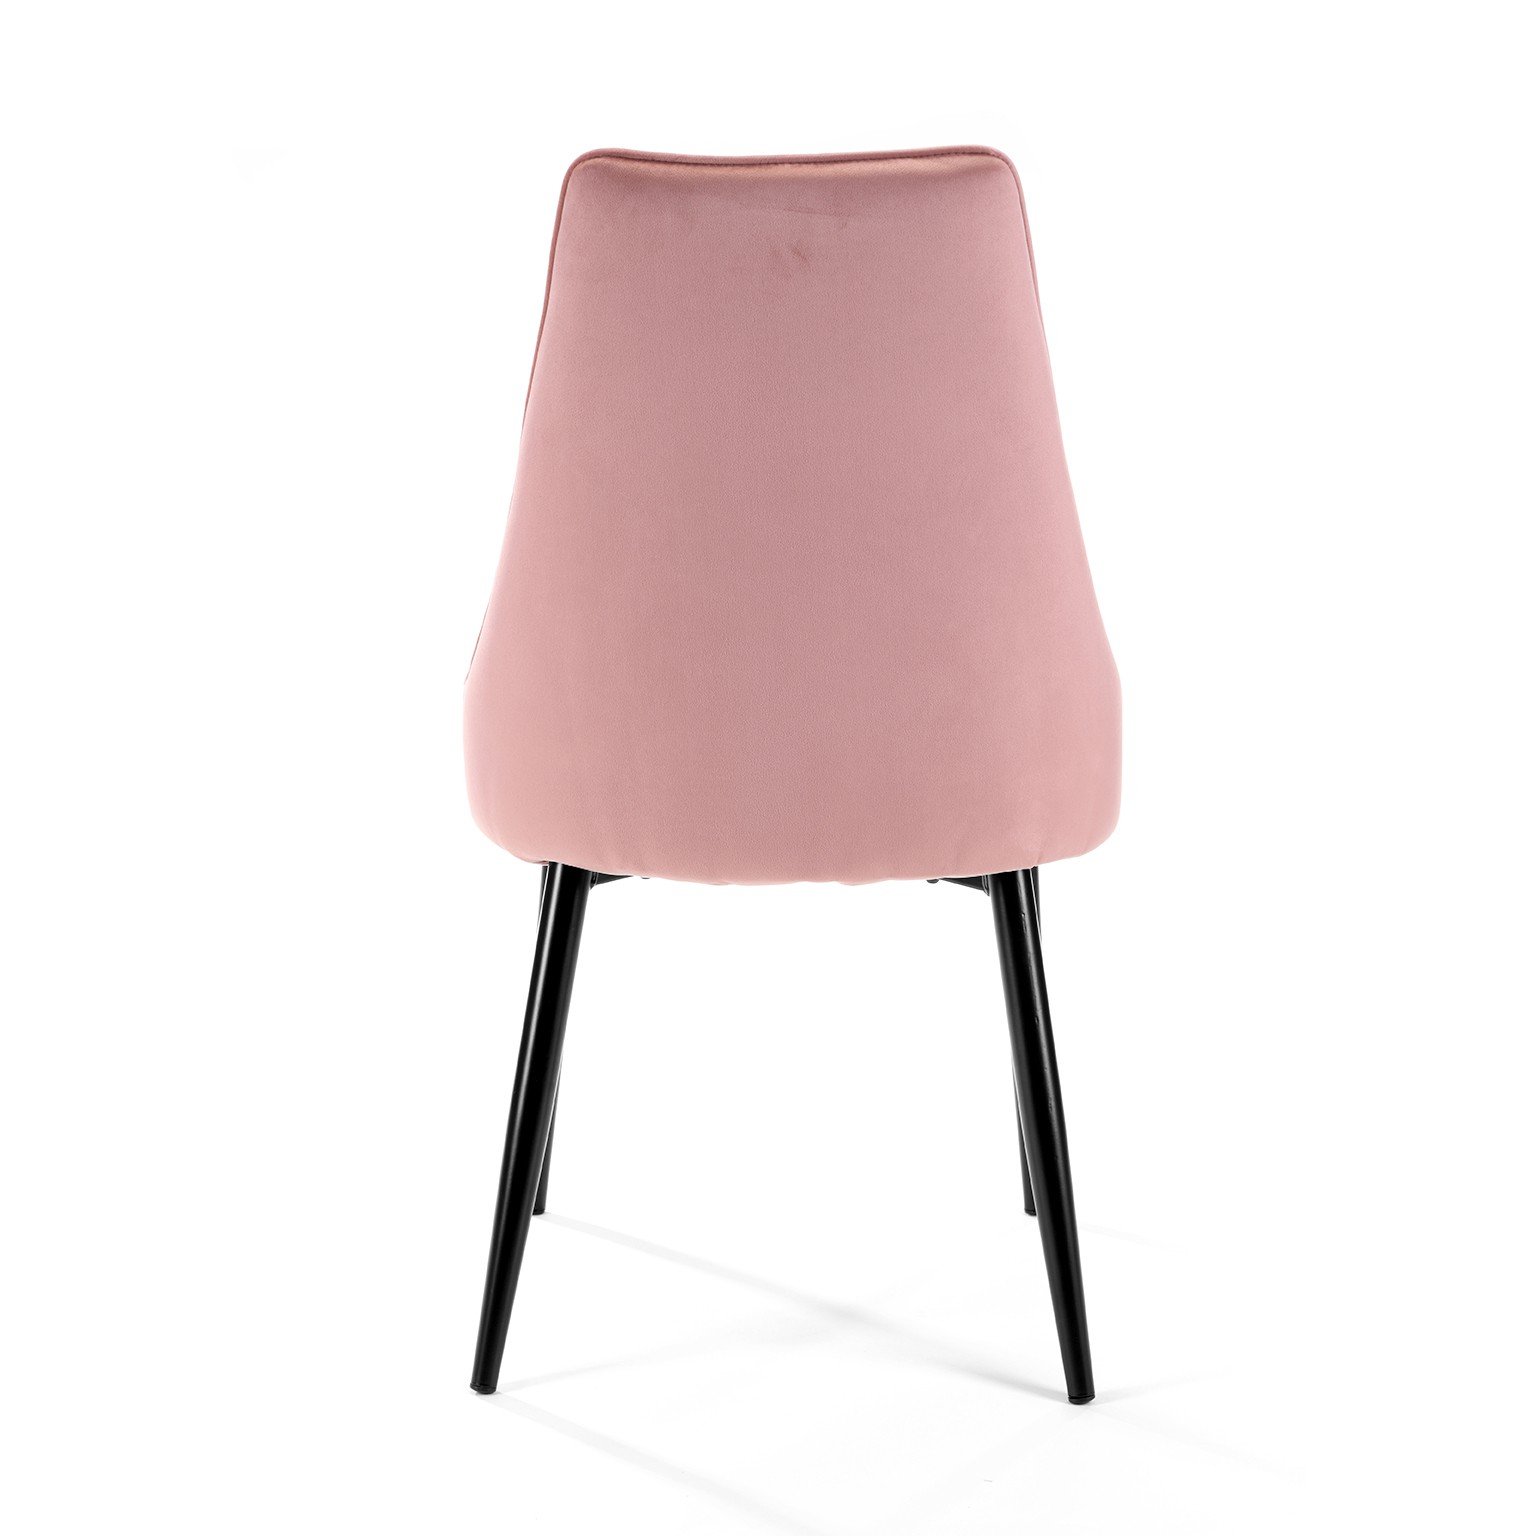 2-ių kėdžių komplektas SJ.054, rožinė - 6